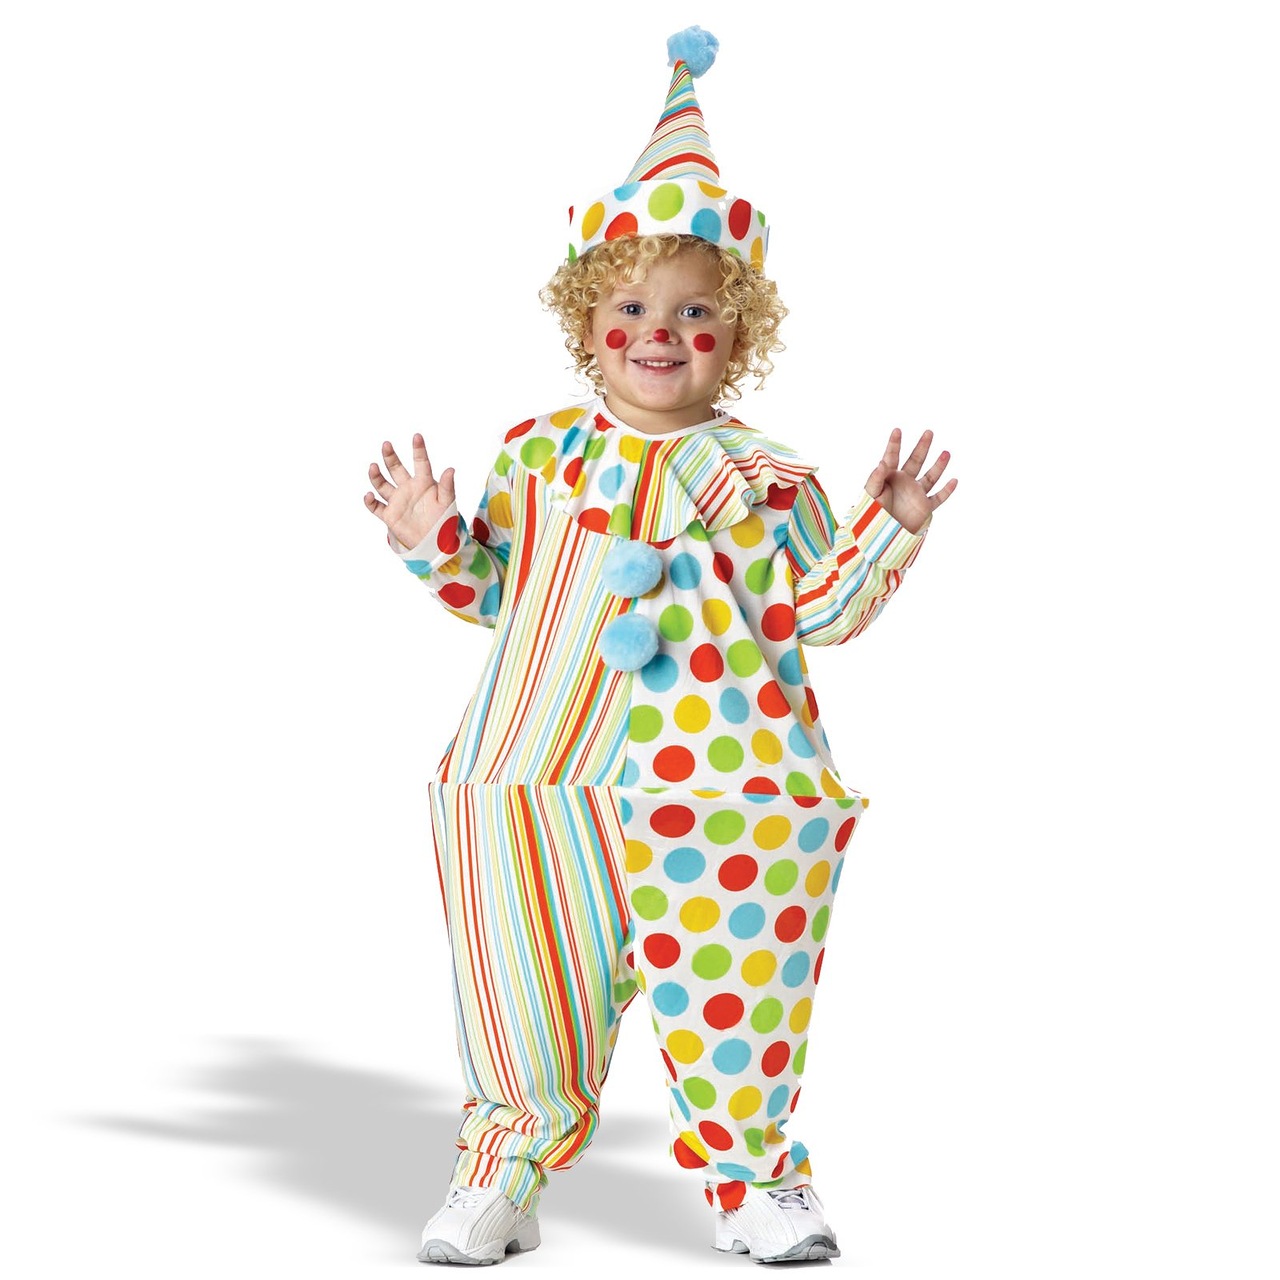 Костюм клоуна своими руками: пошаговая инструкция создания